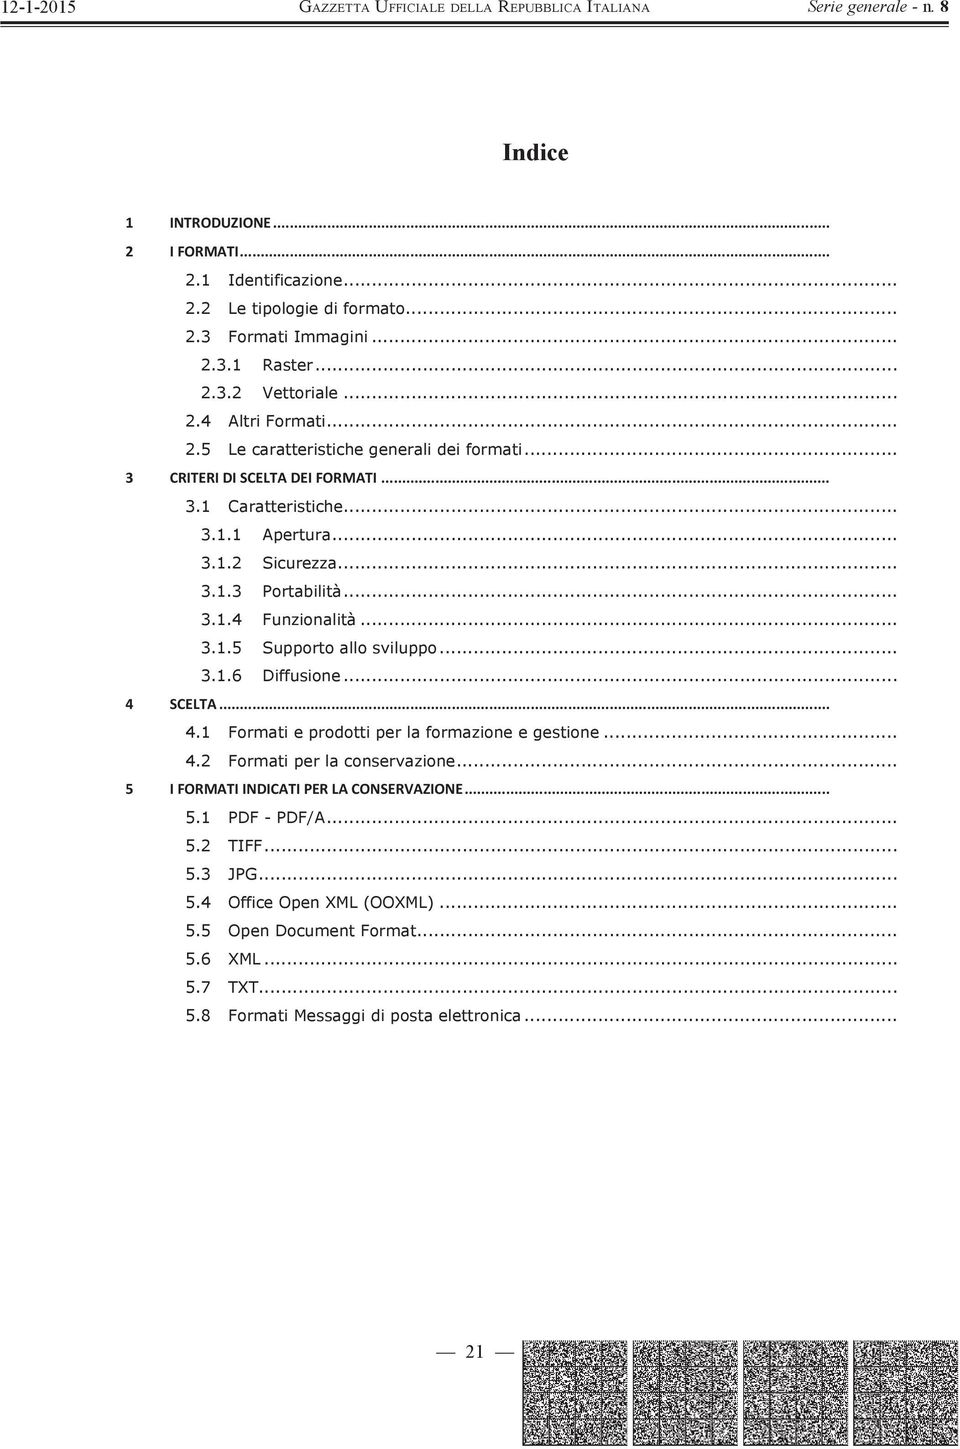 .. SCELTA... 4.1 Formati e prodotti per la formazione e gestione... 4.2 Formati per la conservazione... IFORMATIINDICATIPERLACONSERVAZIONE... 5.1 PDF - PDF/A... 5.2 TIFF... 5.3 JPG.